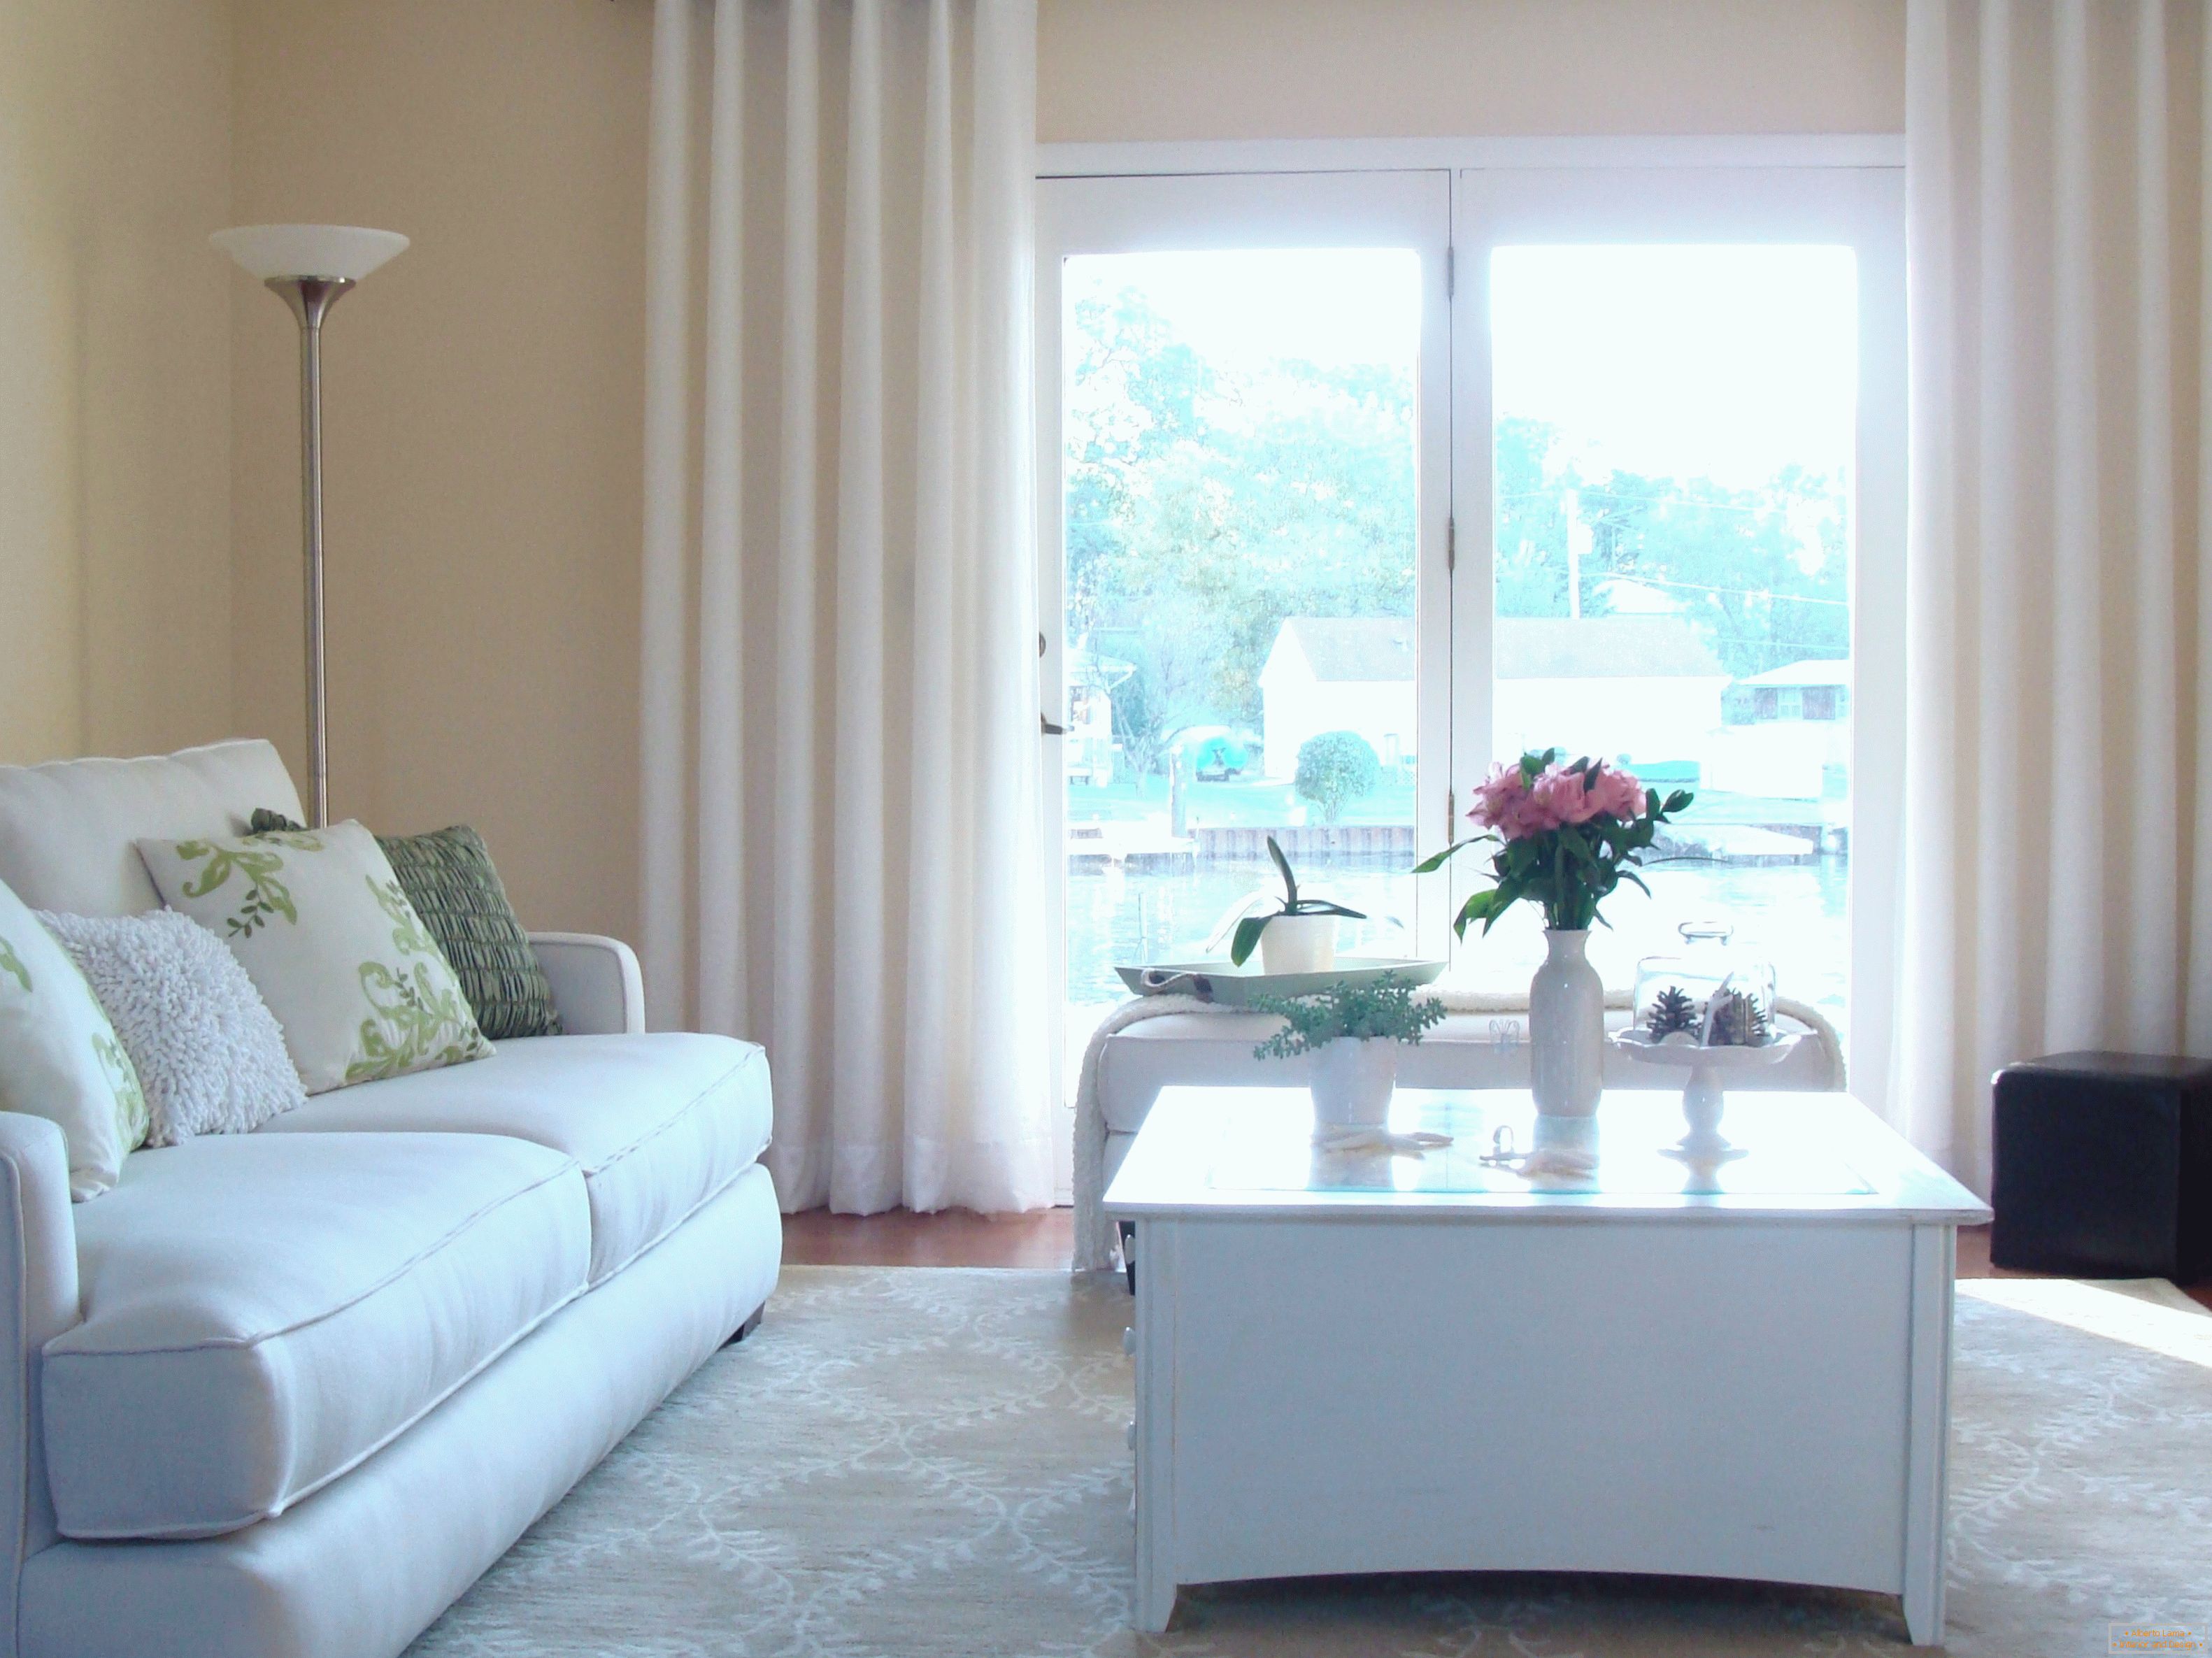 Egyszerű dekorációs nappali fehér függönyökkel